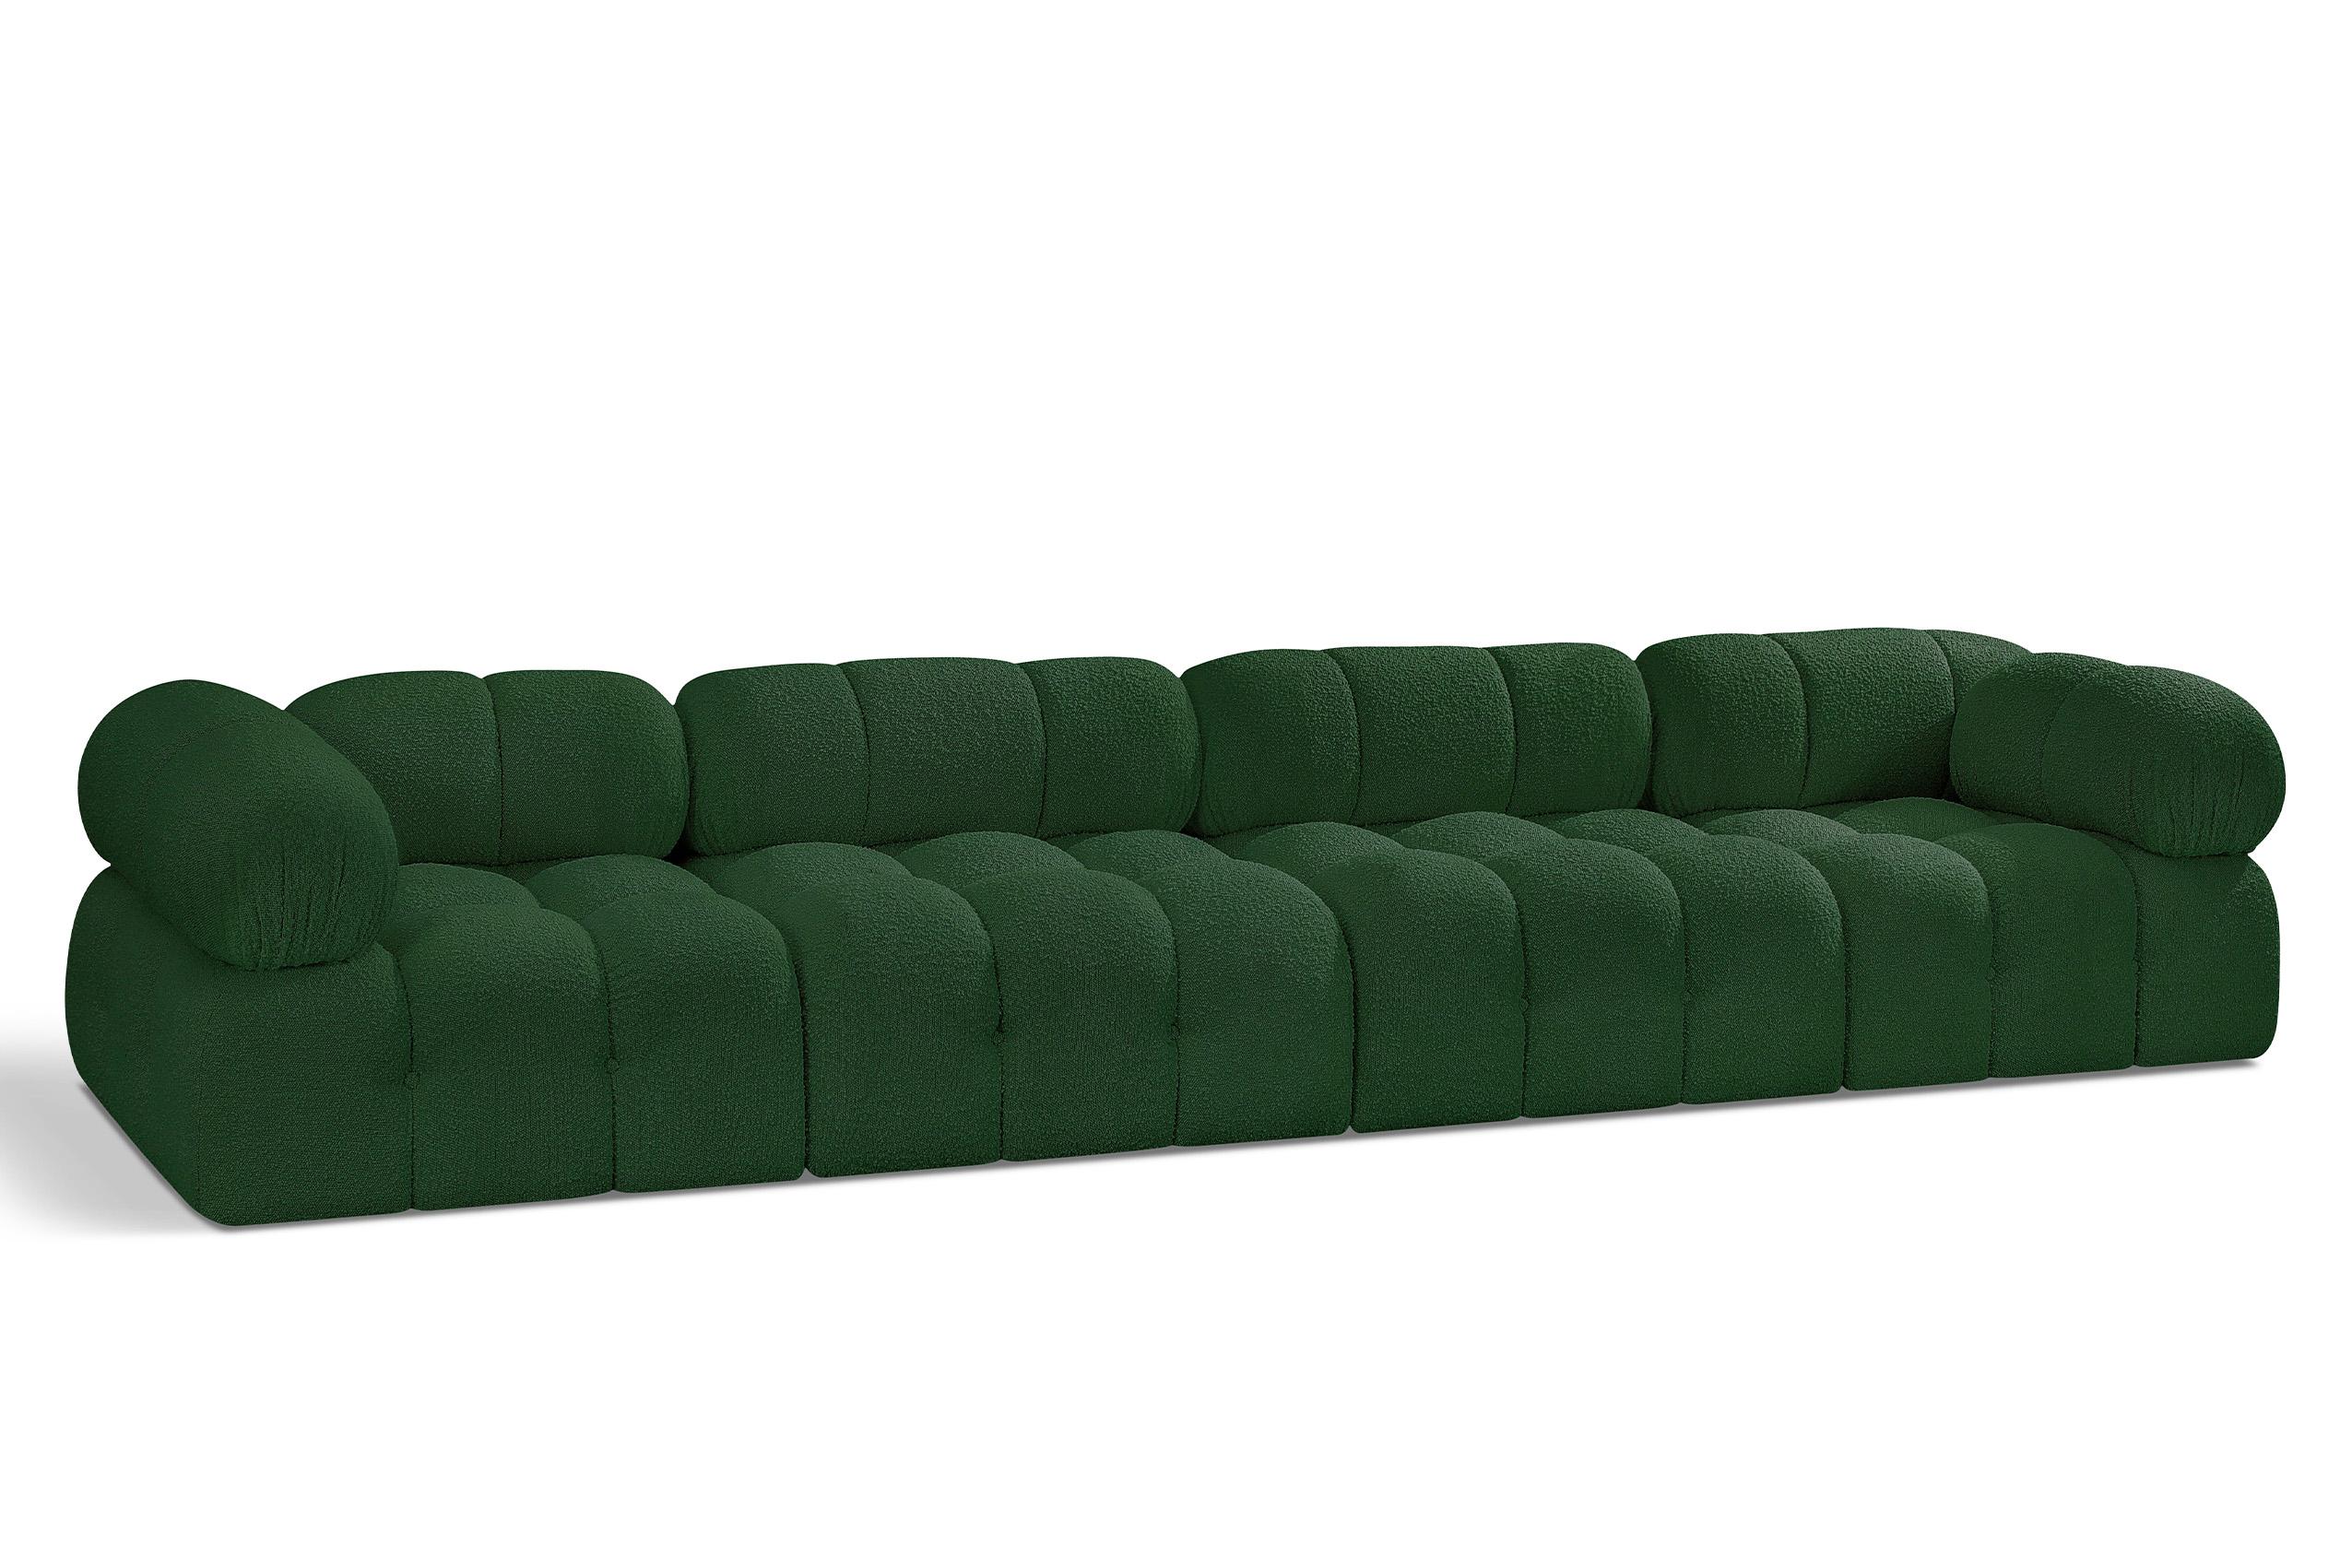 Contemporary, Modern Modular Sofa AMES 611Green-S136A 611Green-S136A in Green 